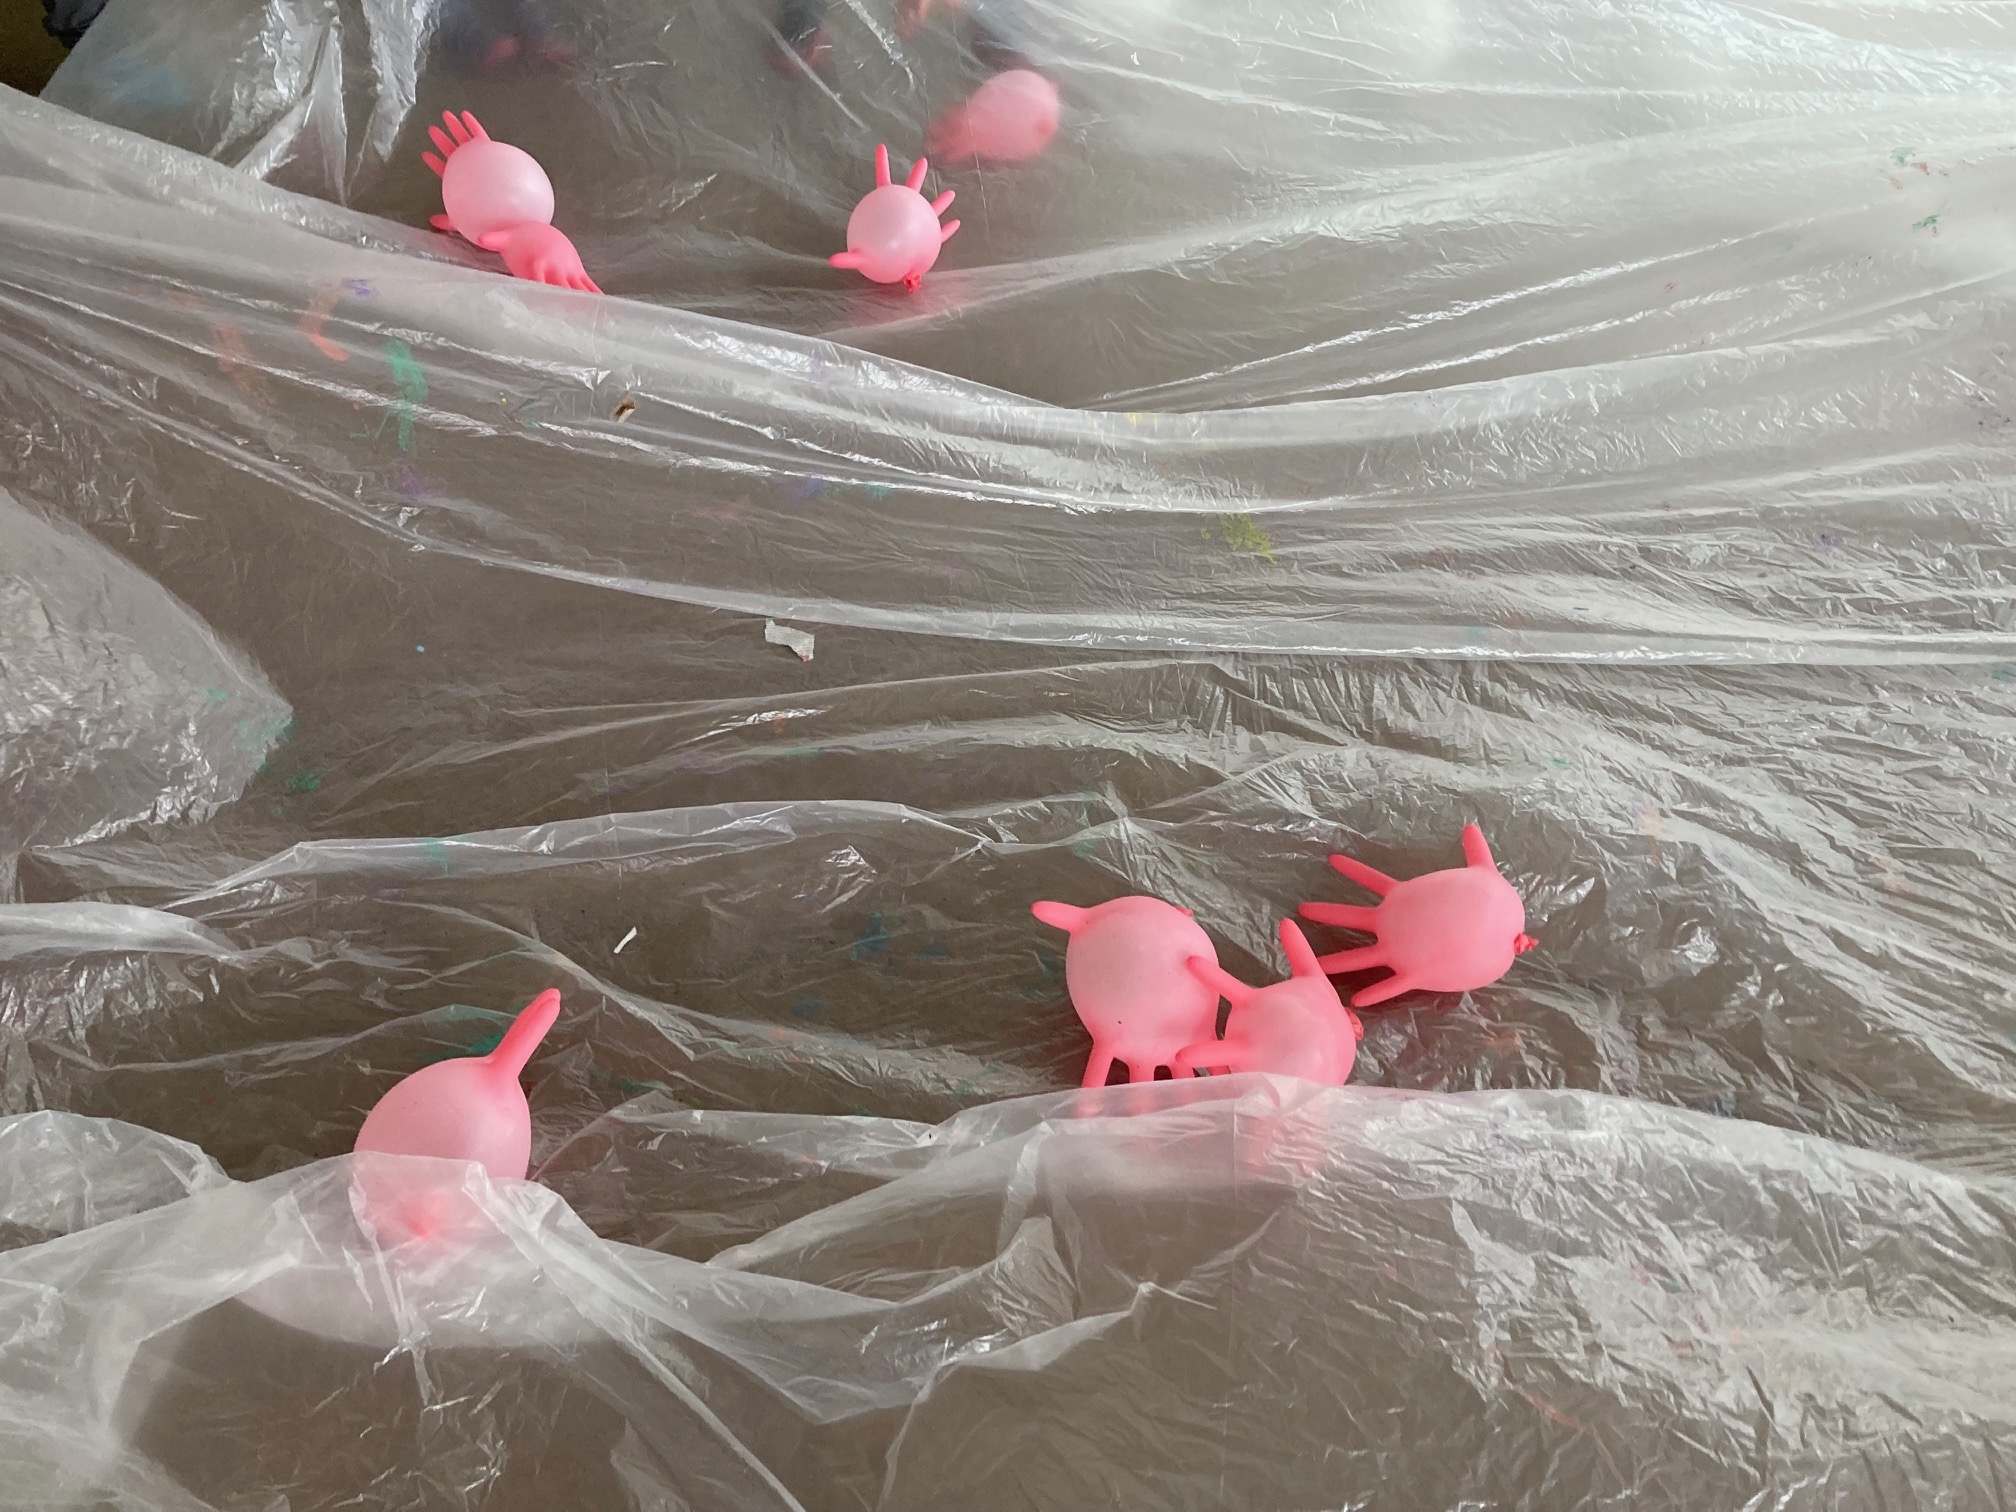 auf einer weißen Folie fliegen aufgeblasene rosa Gummihandschule, die wie Plankton anmuten, herum